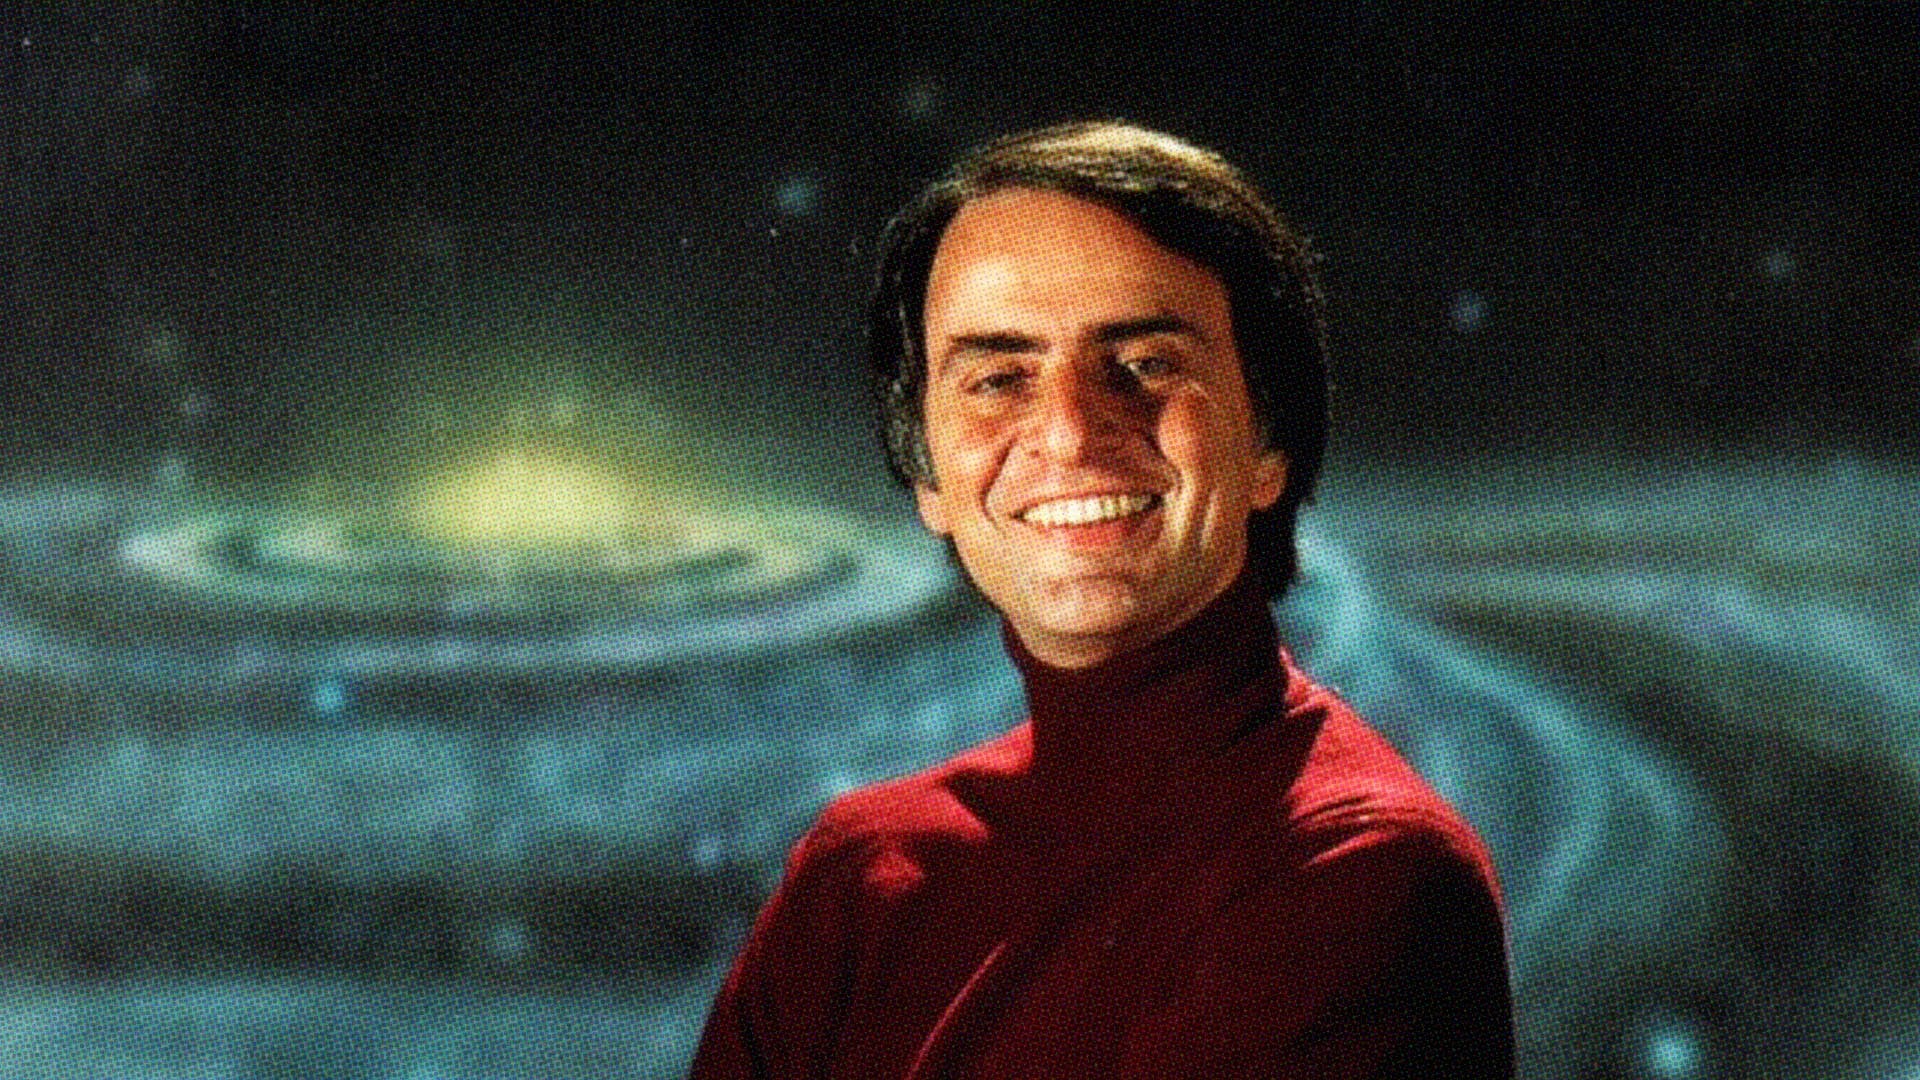 Carl Sagan Wallpaper Image